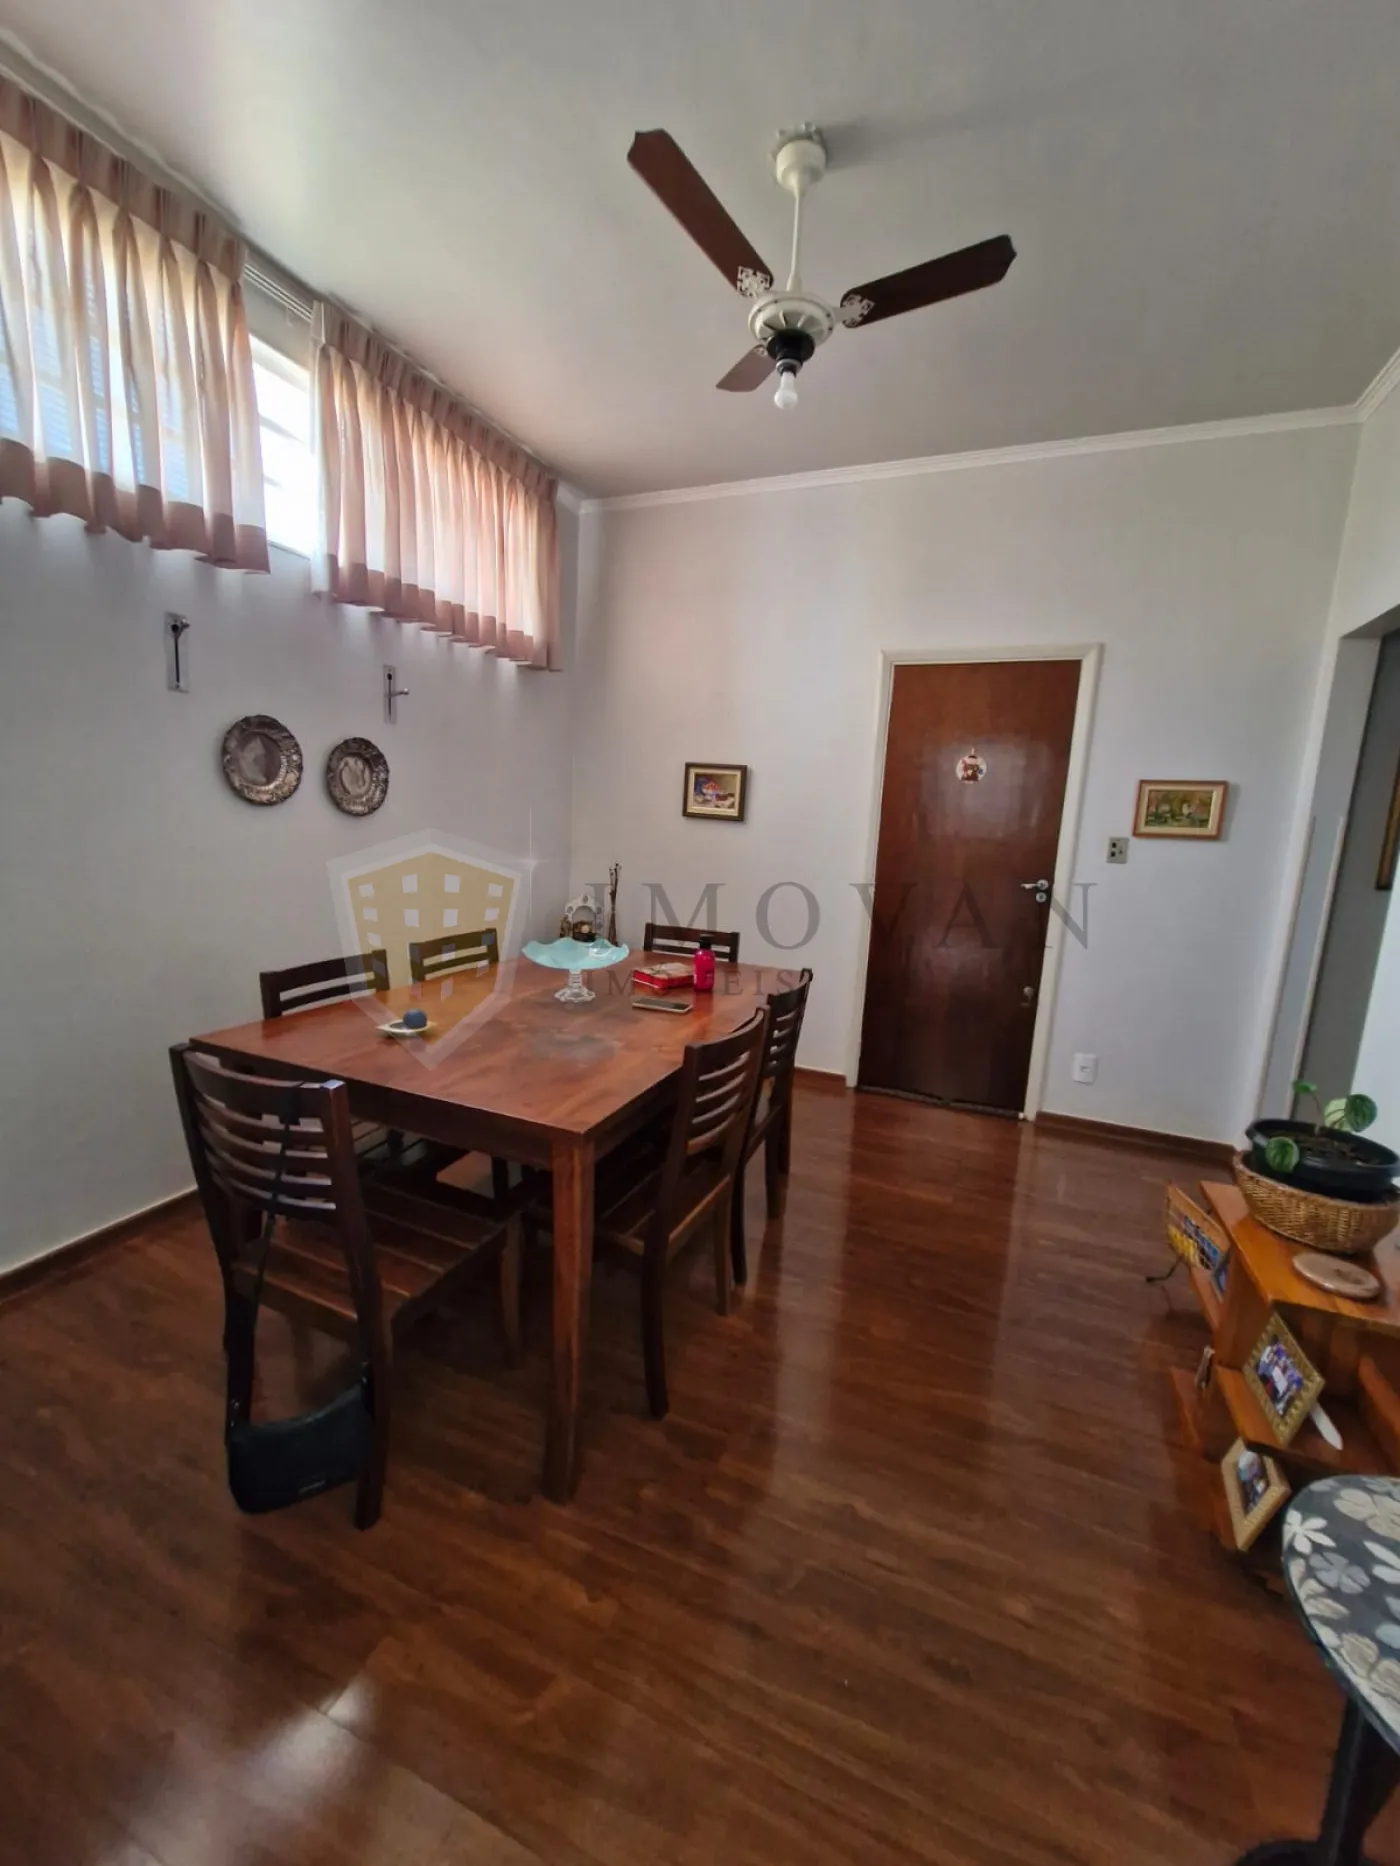 Comprar Casa / Padrão em Ribeirão Preto R$ 560.000,00 - Foto 11